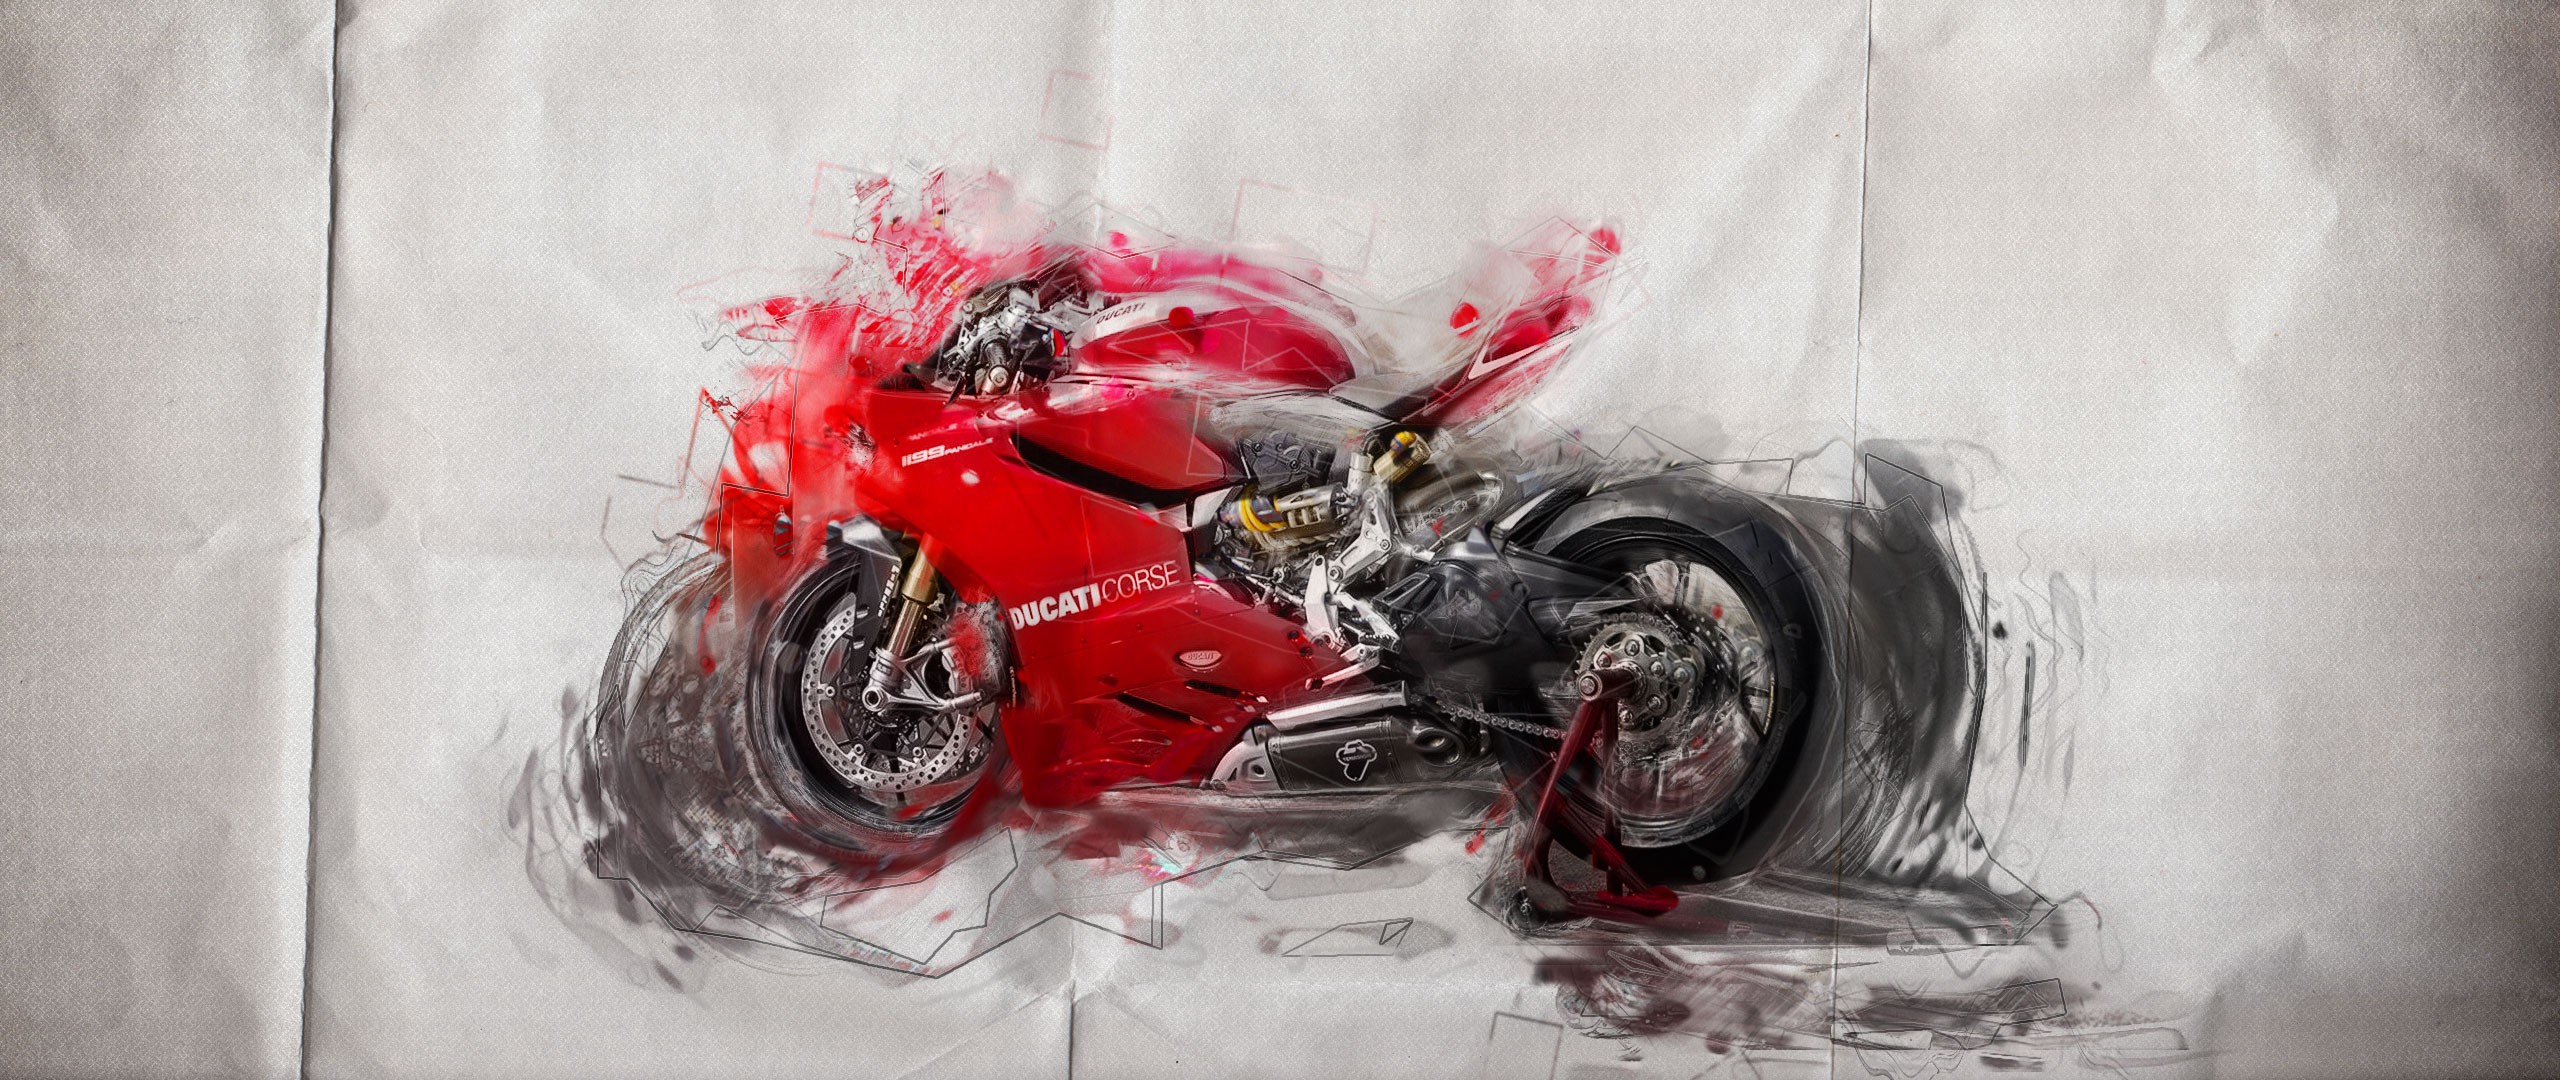 General 2560x1080 Ducati motorcycle red paper artwork vehicle Red Motorcycles Volkswagen Group digital art